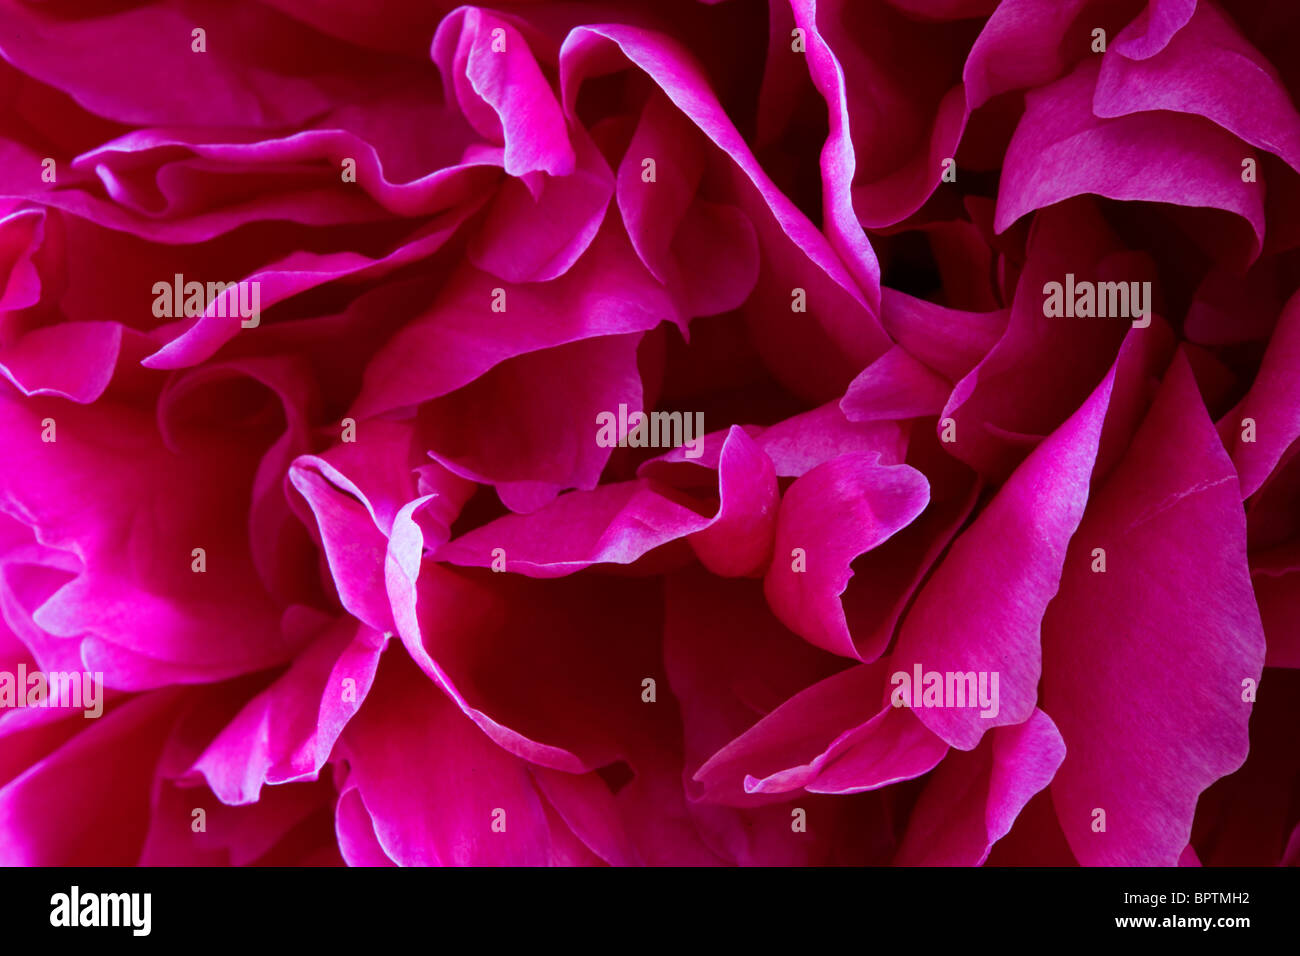 Image Gros plan extrême de pétales de pivoine rose Banque D'Images